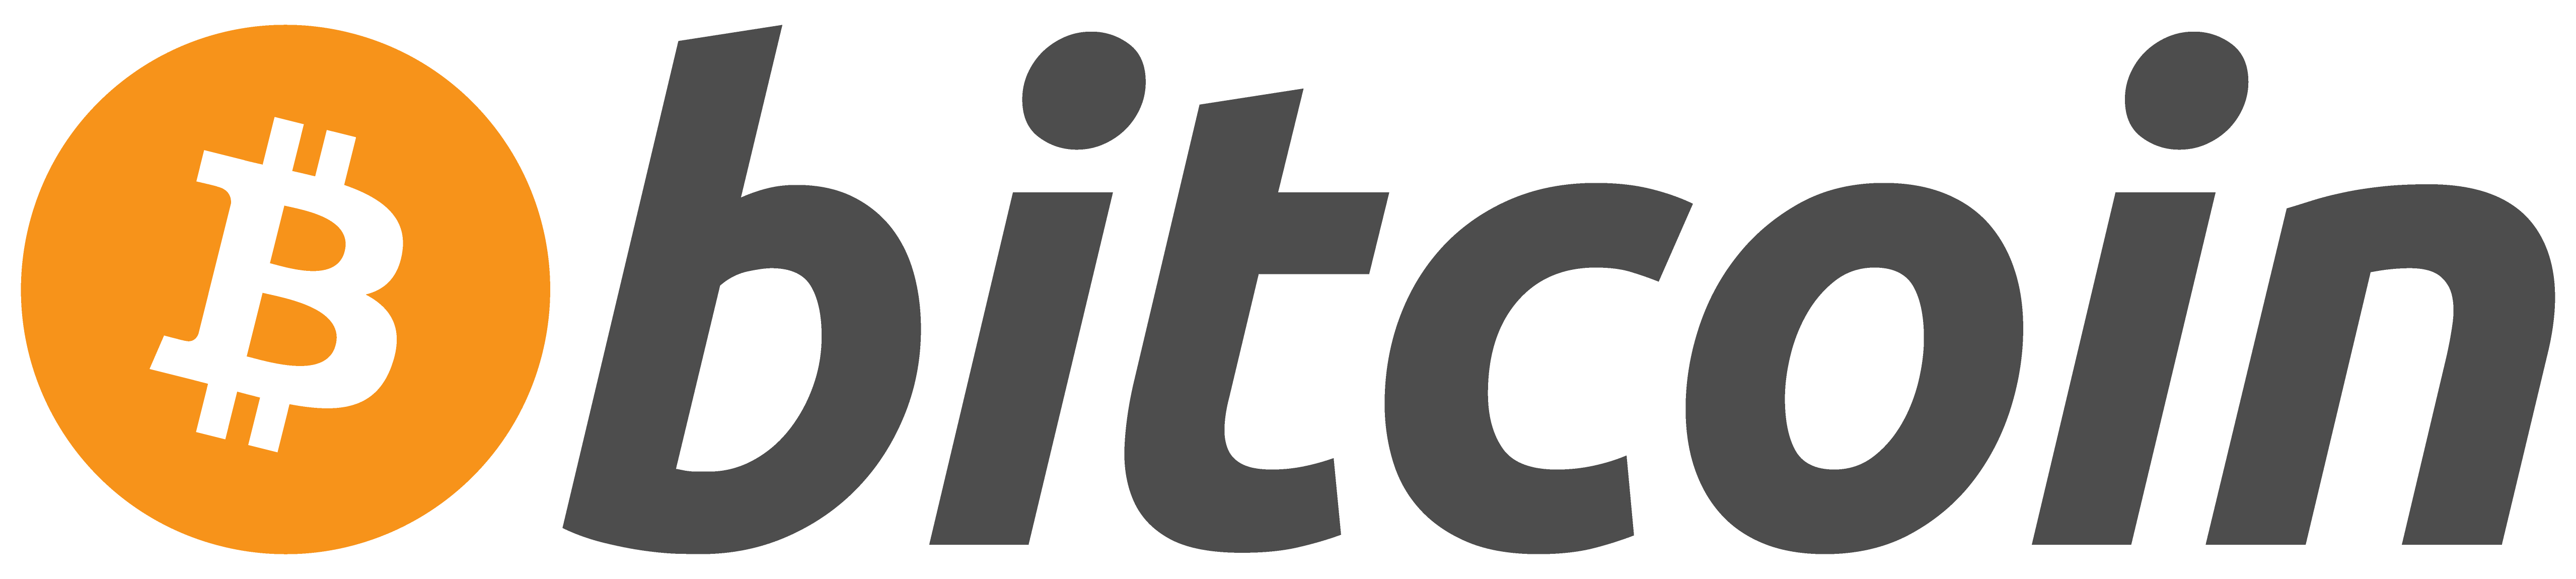 Bitcoin logo colors